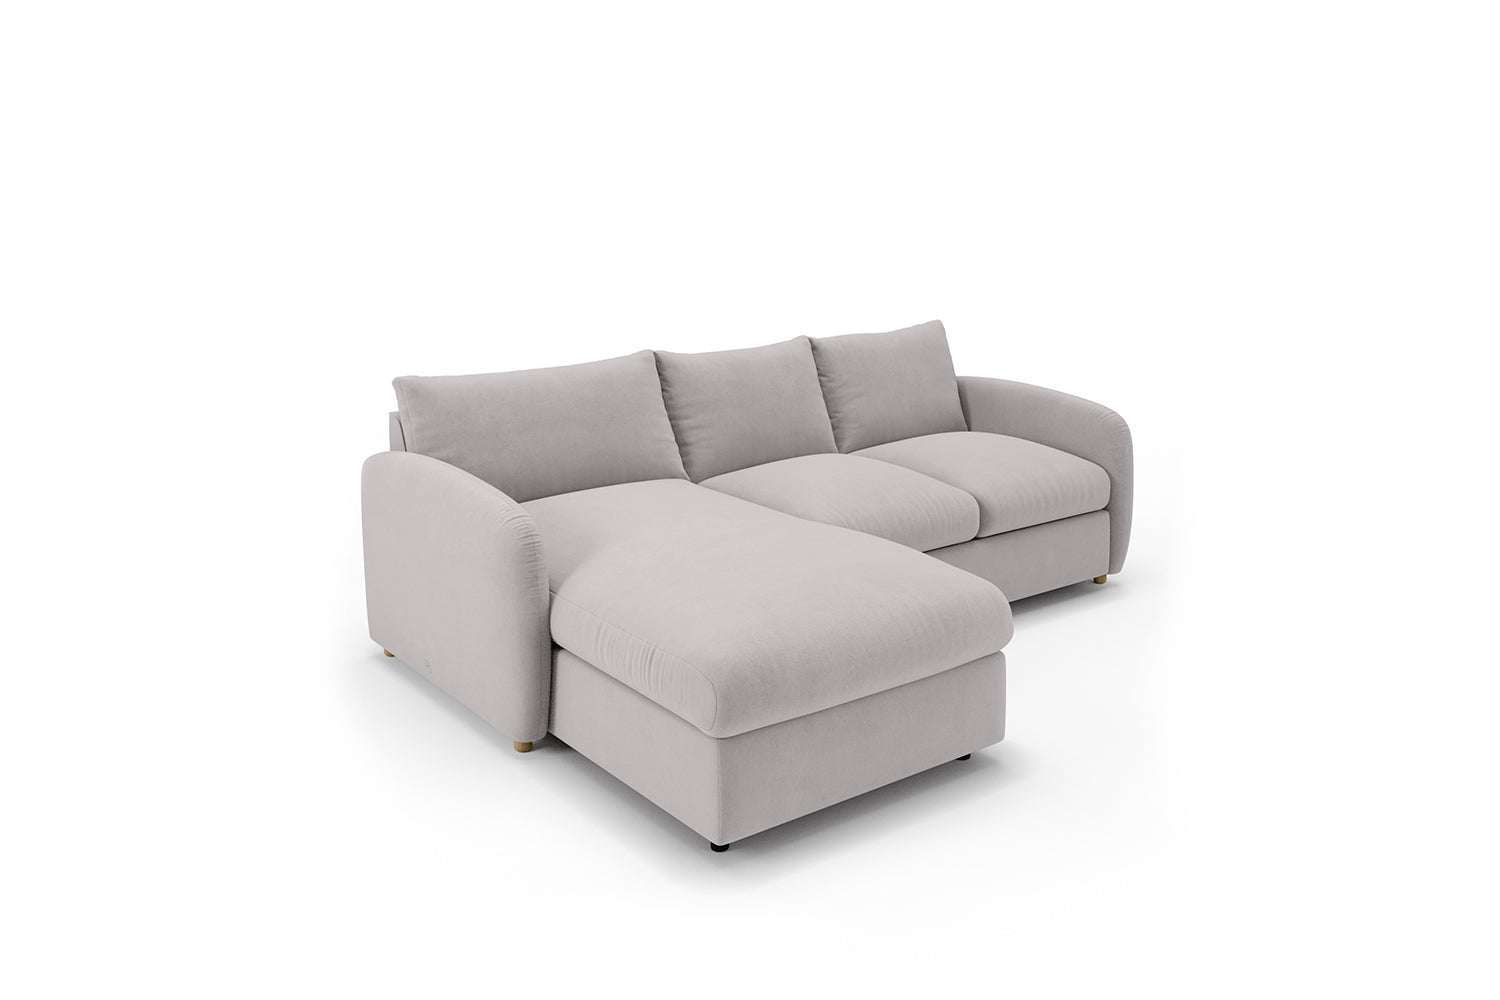 SNUG | The Small Biggie Chaise Corner Sofa in Warm Grey